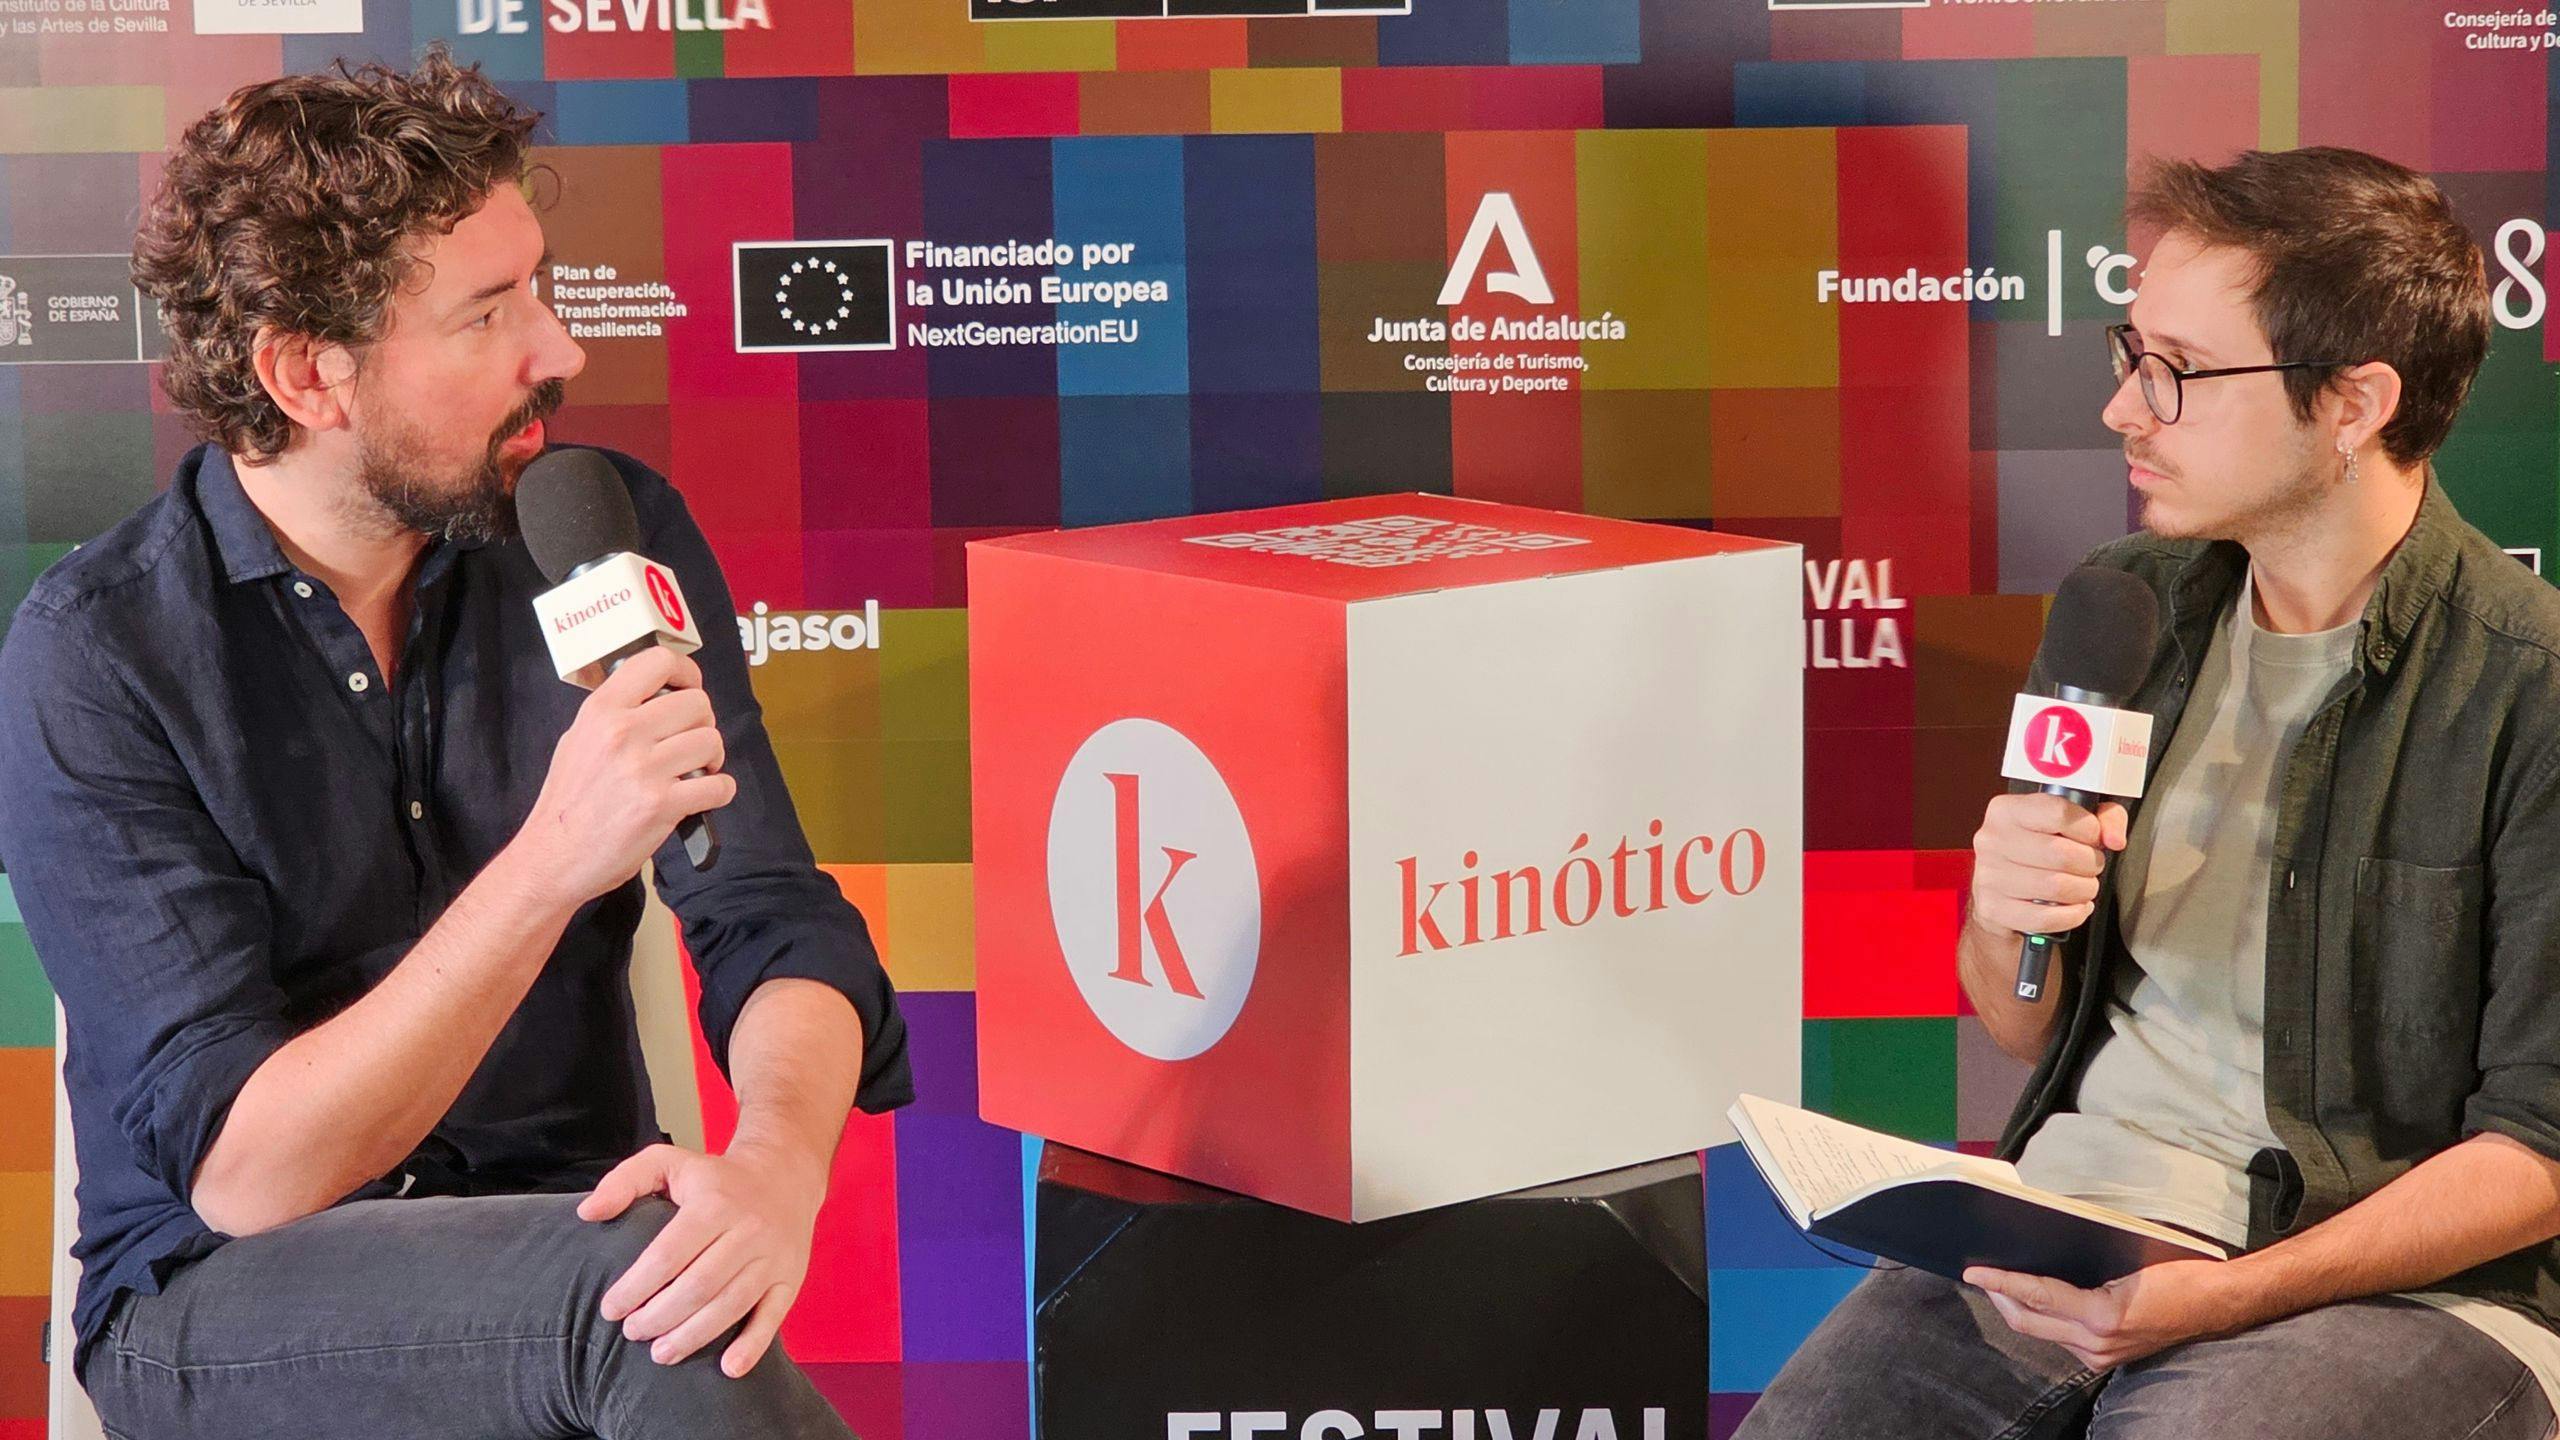 El director Pedro Aguilera, en el set de Kinótico en la 20 edición del Festival de Sevilla